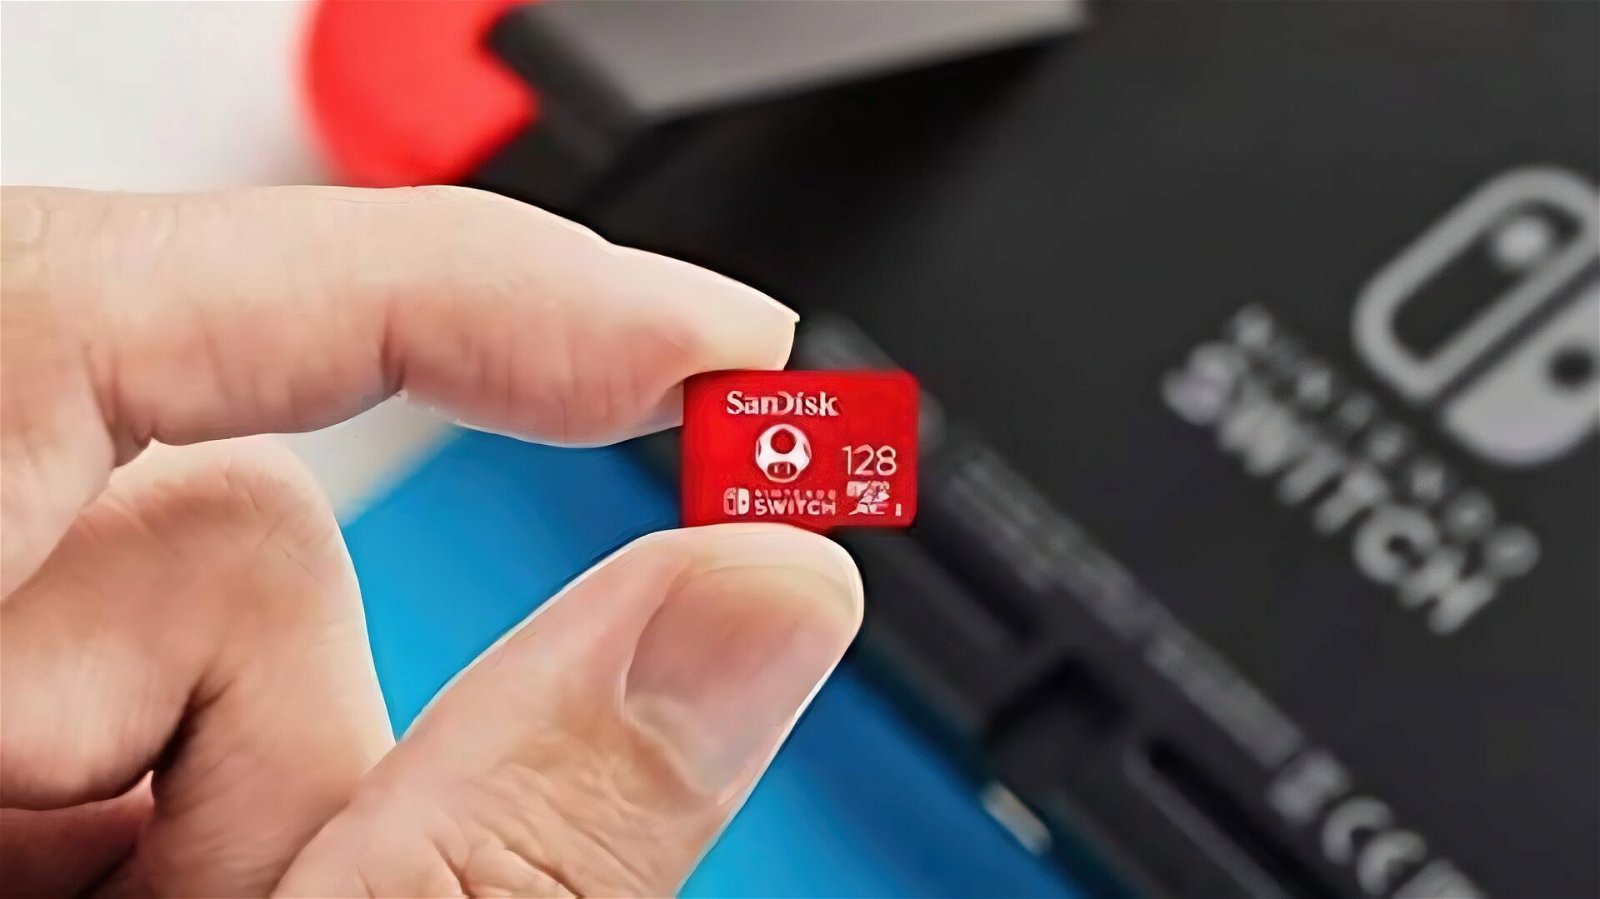 MicroSD ufficiale Switch da 128 GB al prezzo più basso di sempre! La paghi solo 18€!